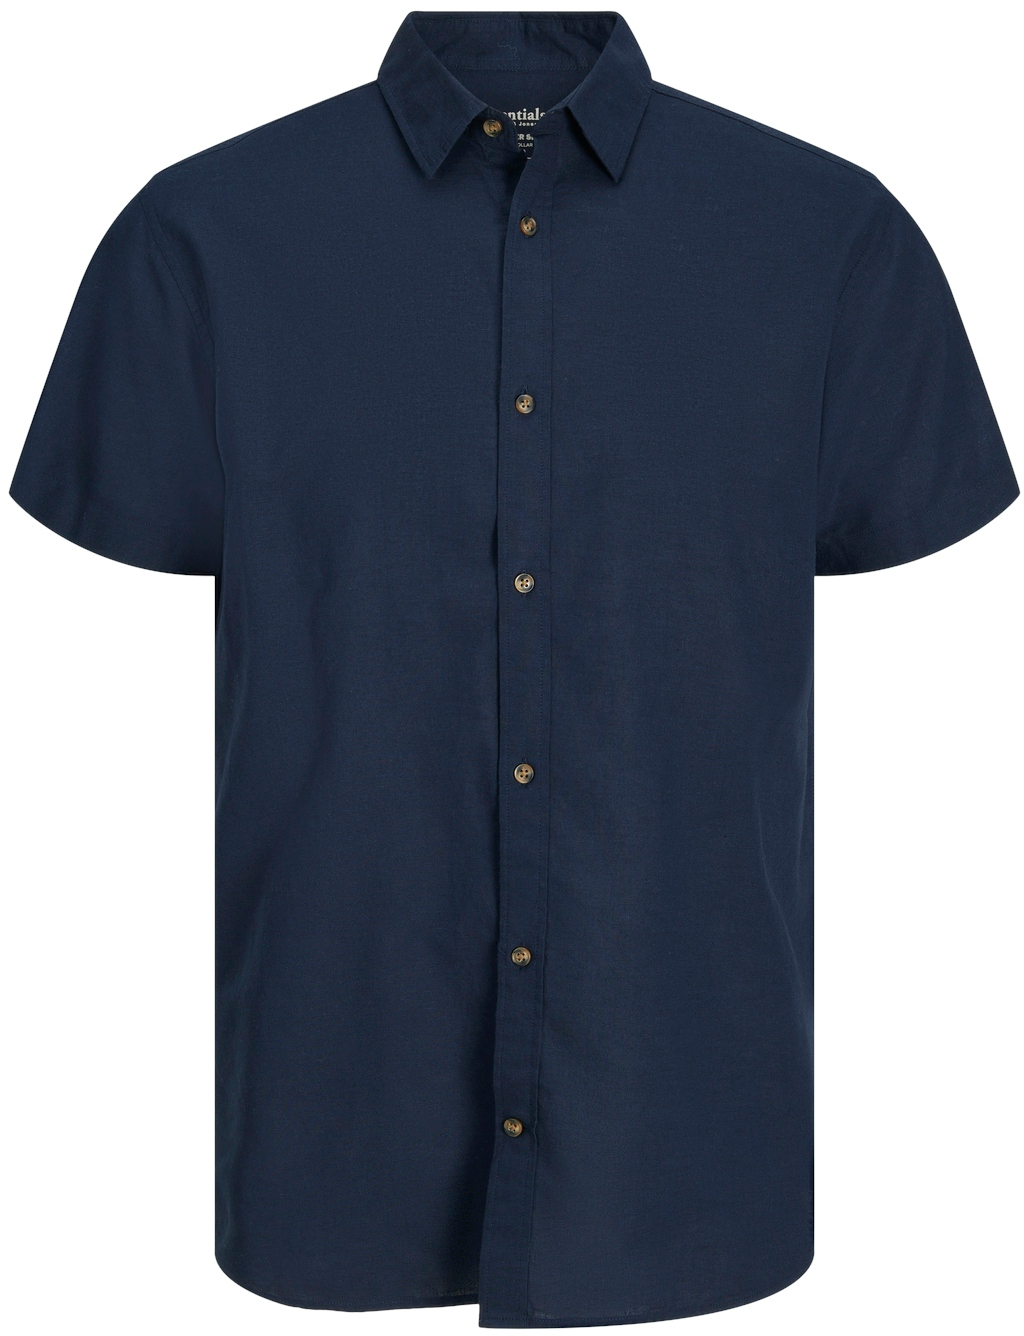 Jack&Jones Pánská košile JJESUMMER Comfort Fit 12248383 Navy Blazer S